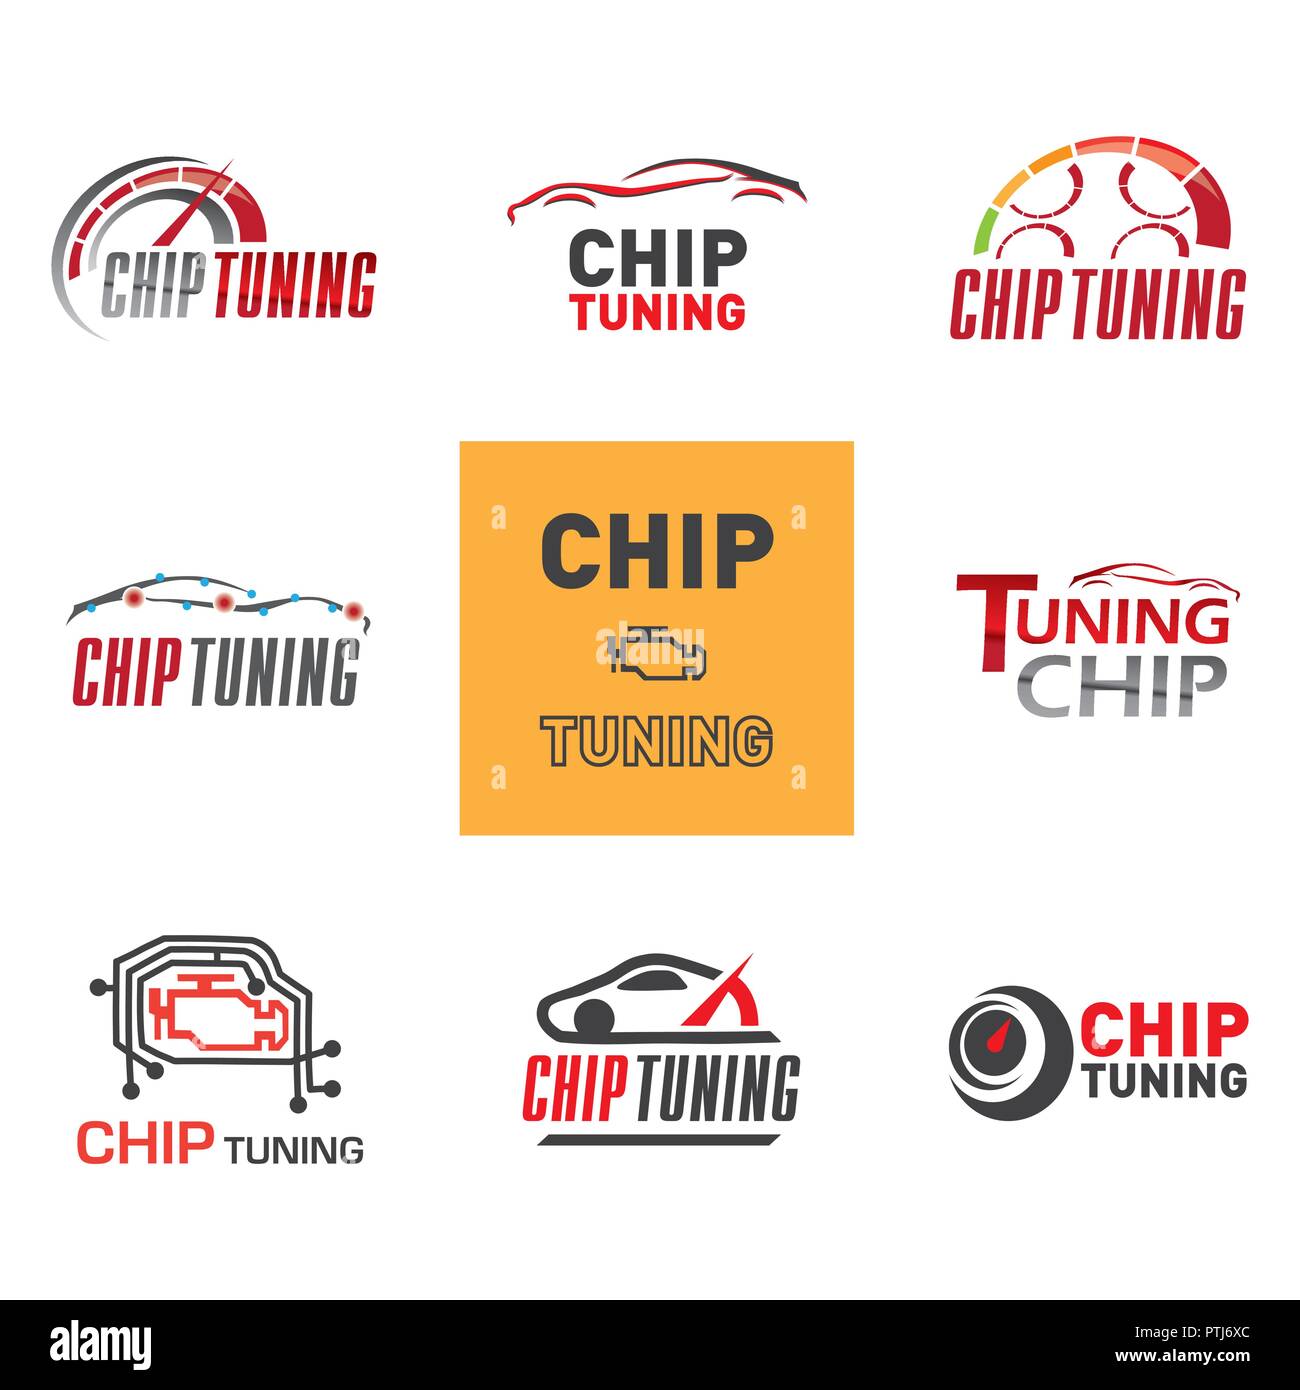 Chip tuning Banque de photographies et d'images à haute résolution - Alamy